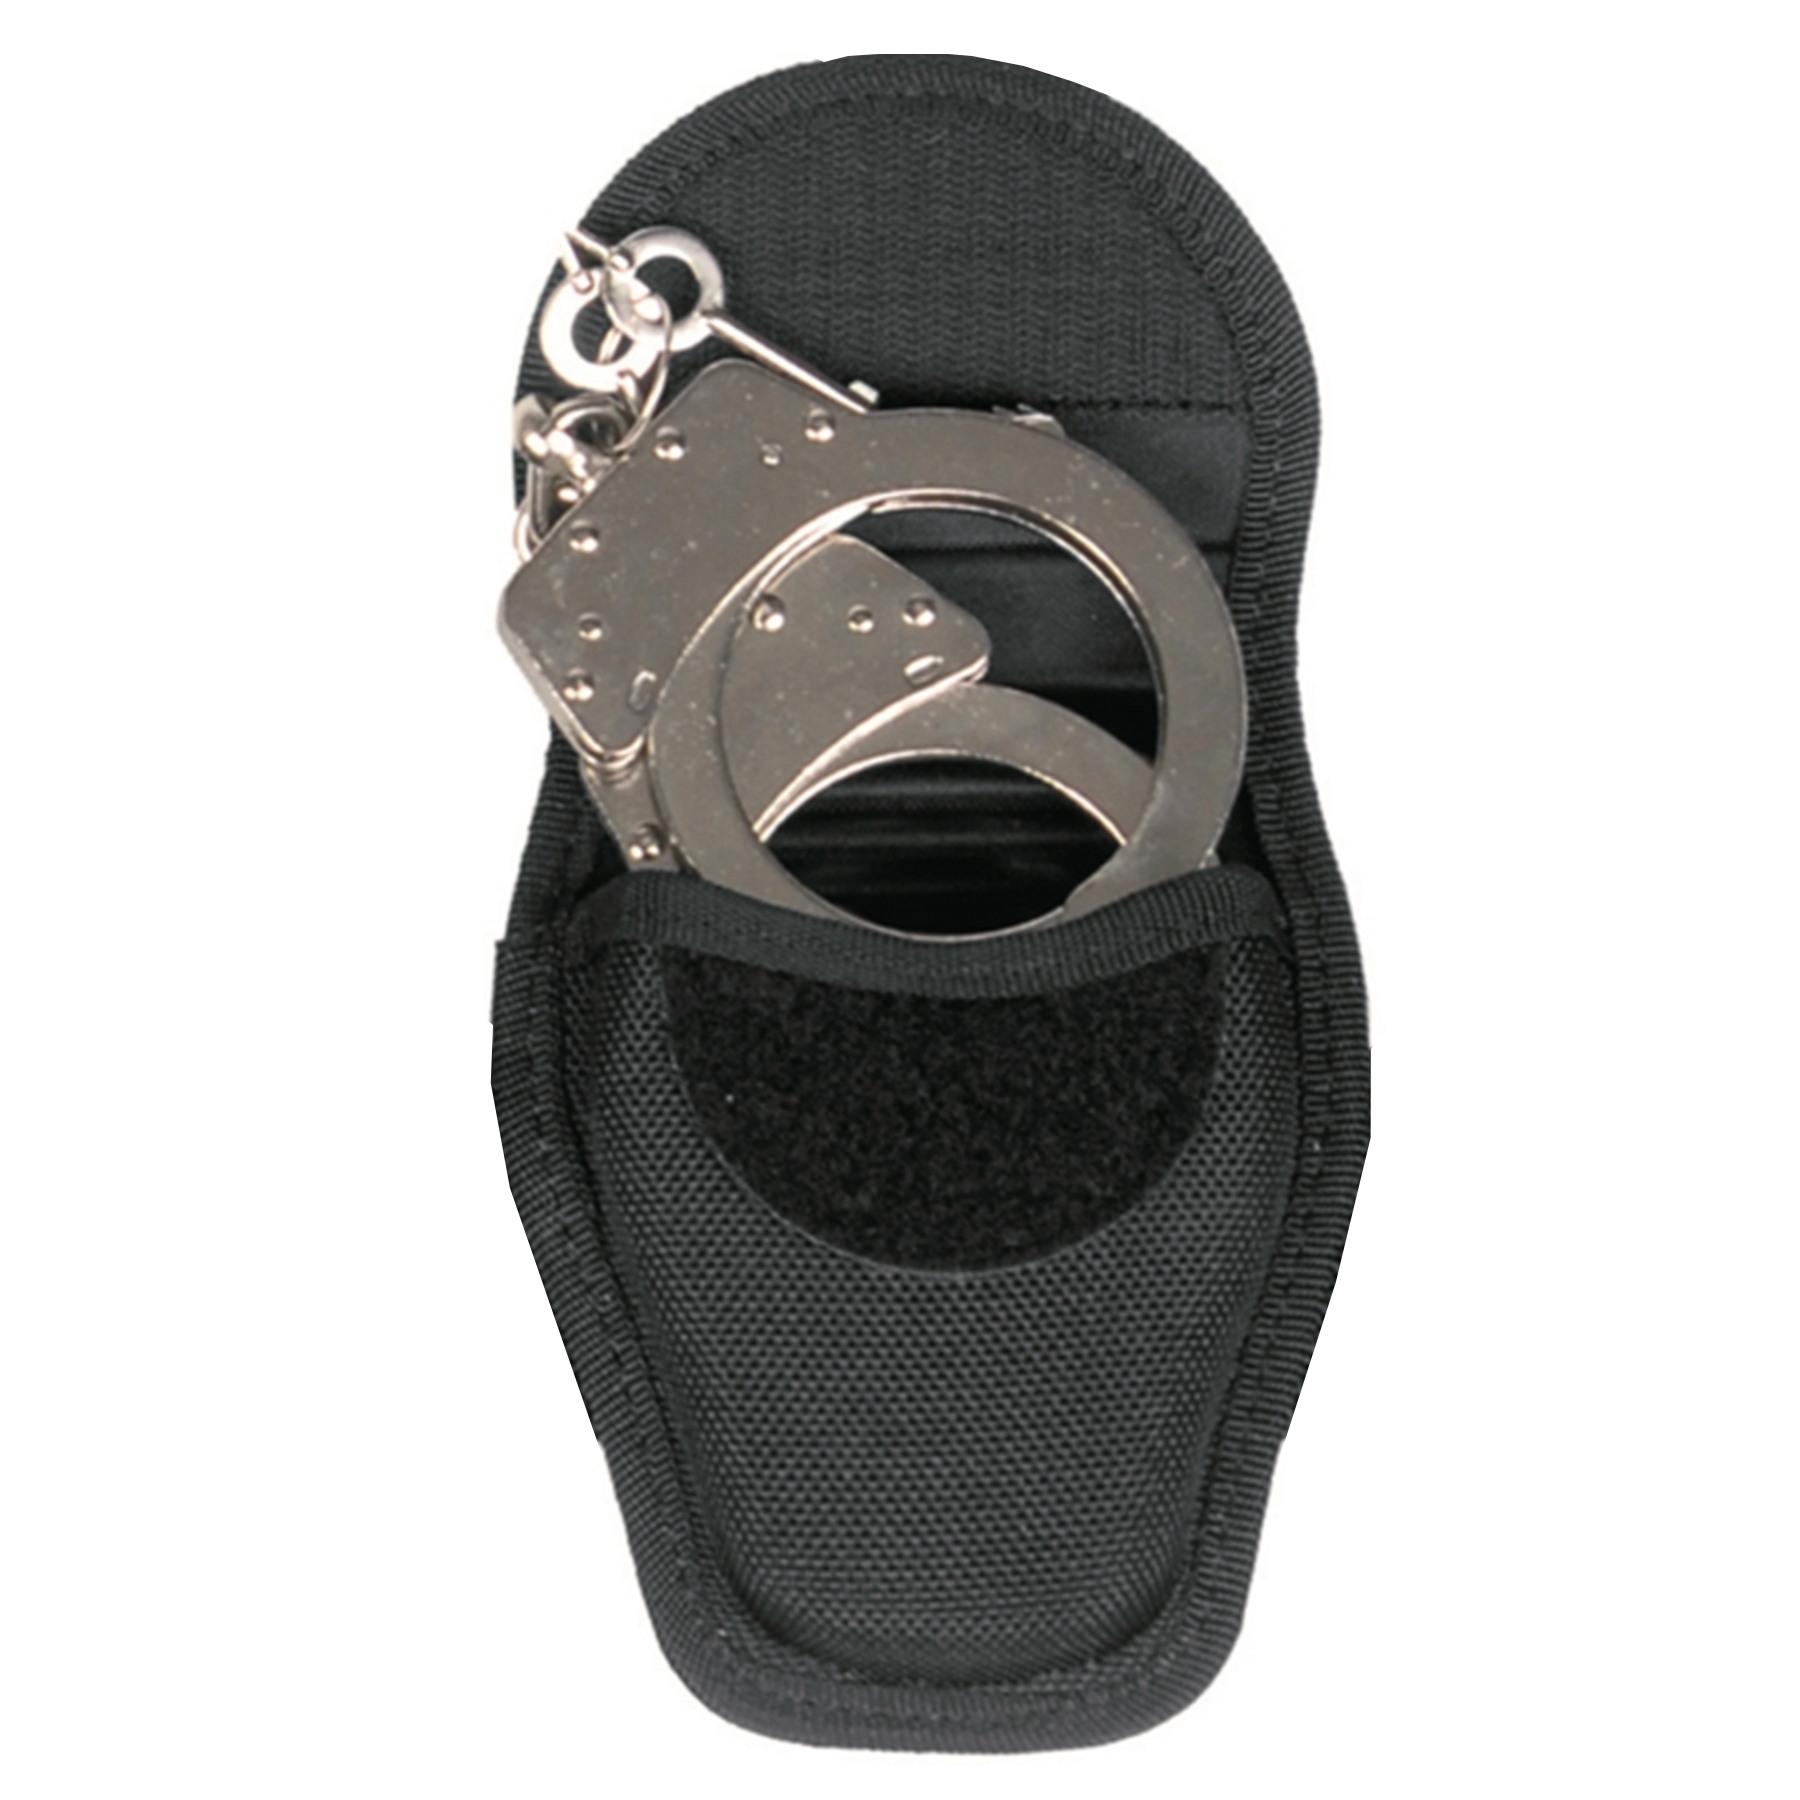 Defense Handcuff Case-6842